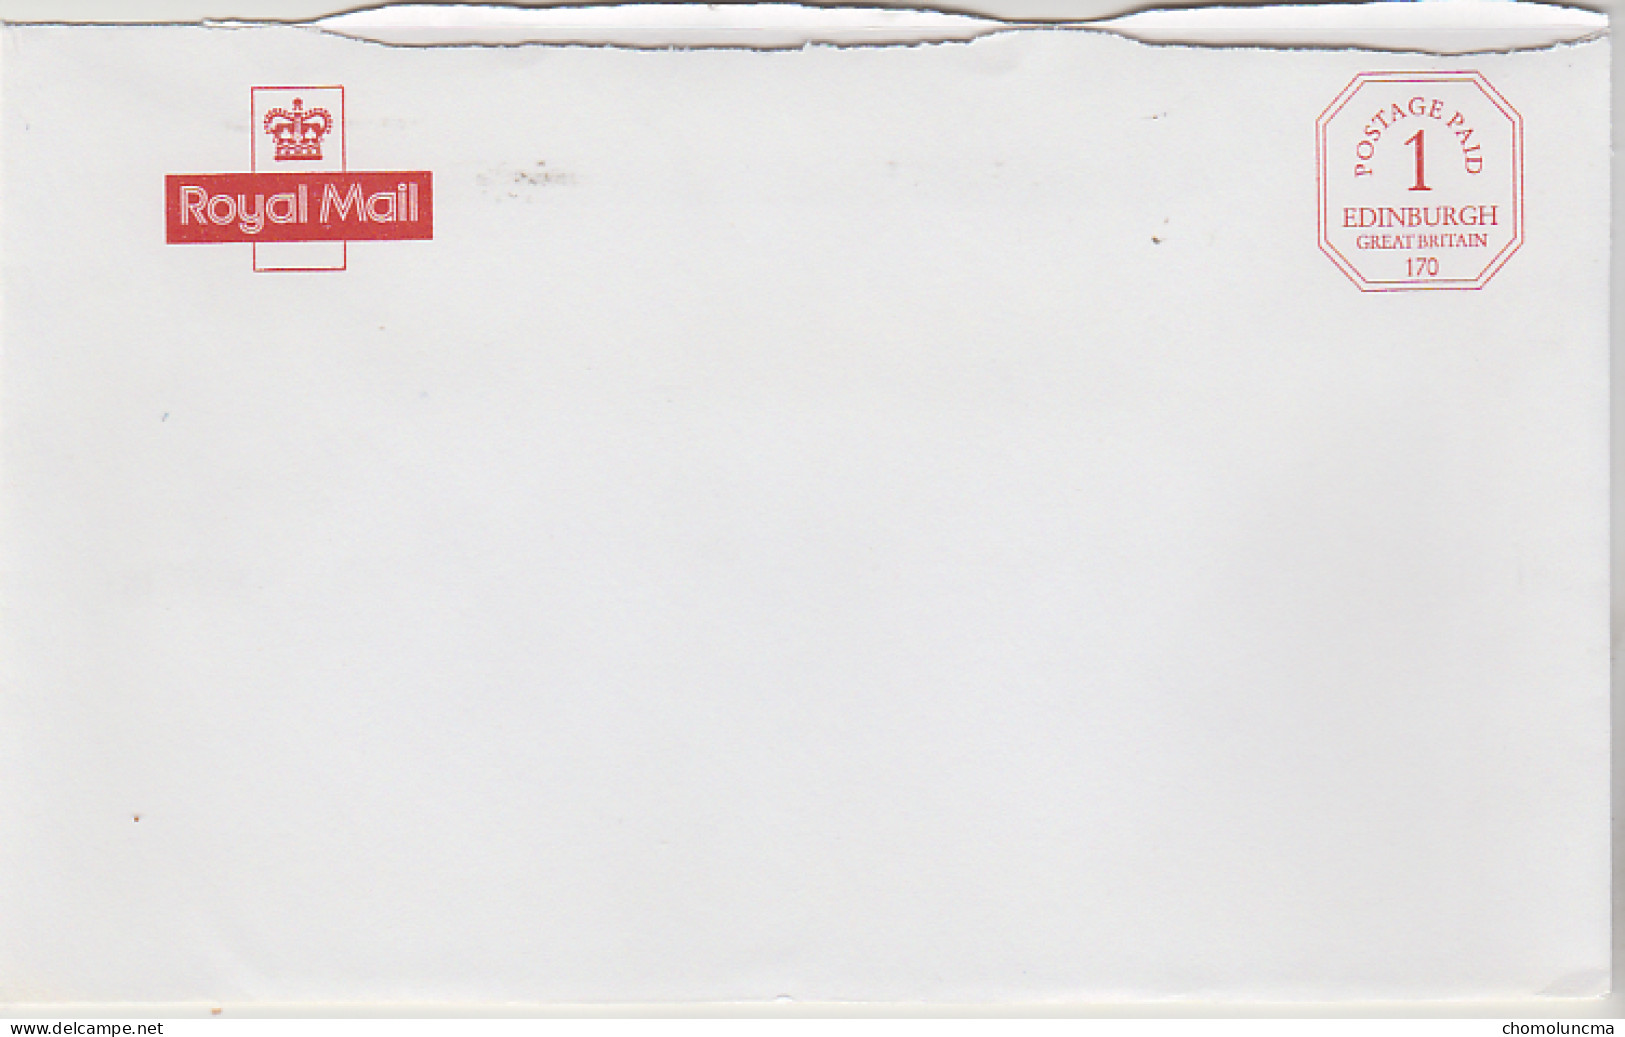 Royal Mail Cancel Postage Paid Edinburgh Printed In Red Port Payé Du Service Philatélique De Grande Bretagne - Officials